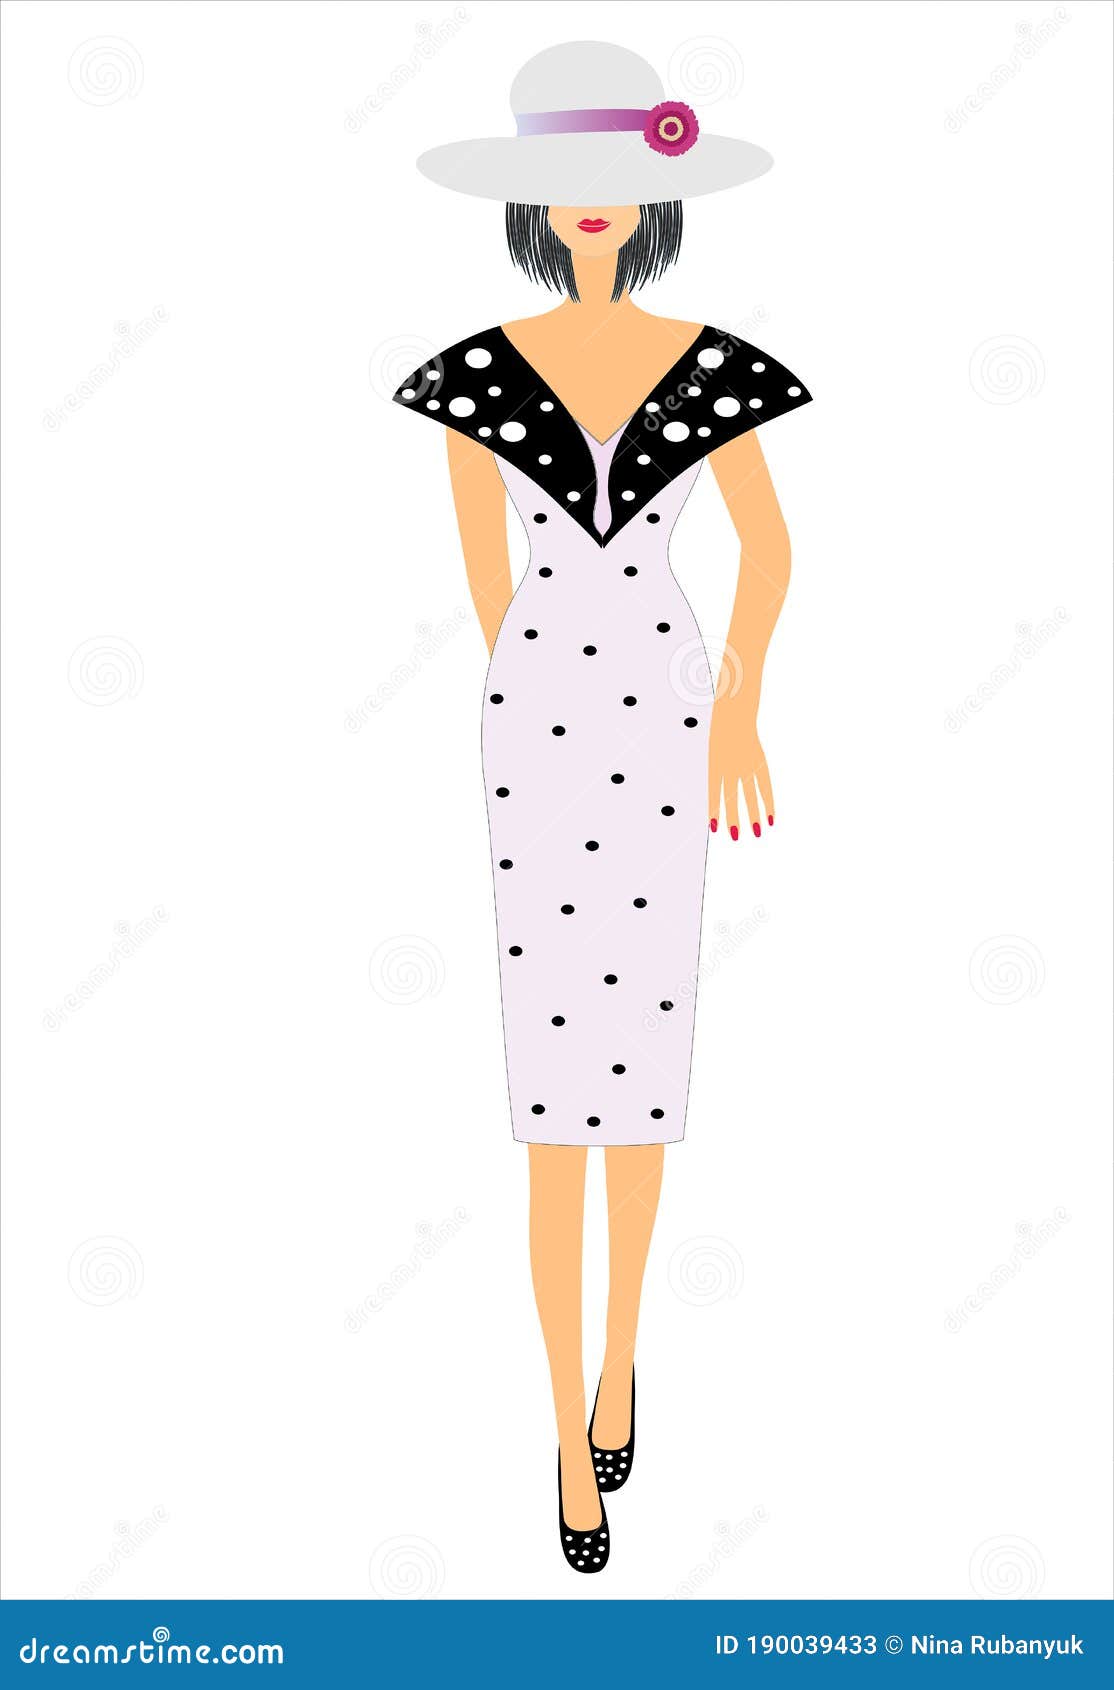 Ropa de moda para mujeres ilustración del vector. Ilustración de pelo -  190039433